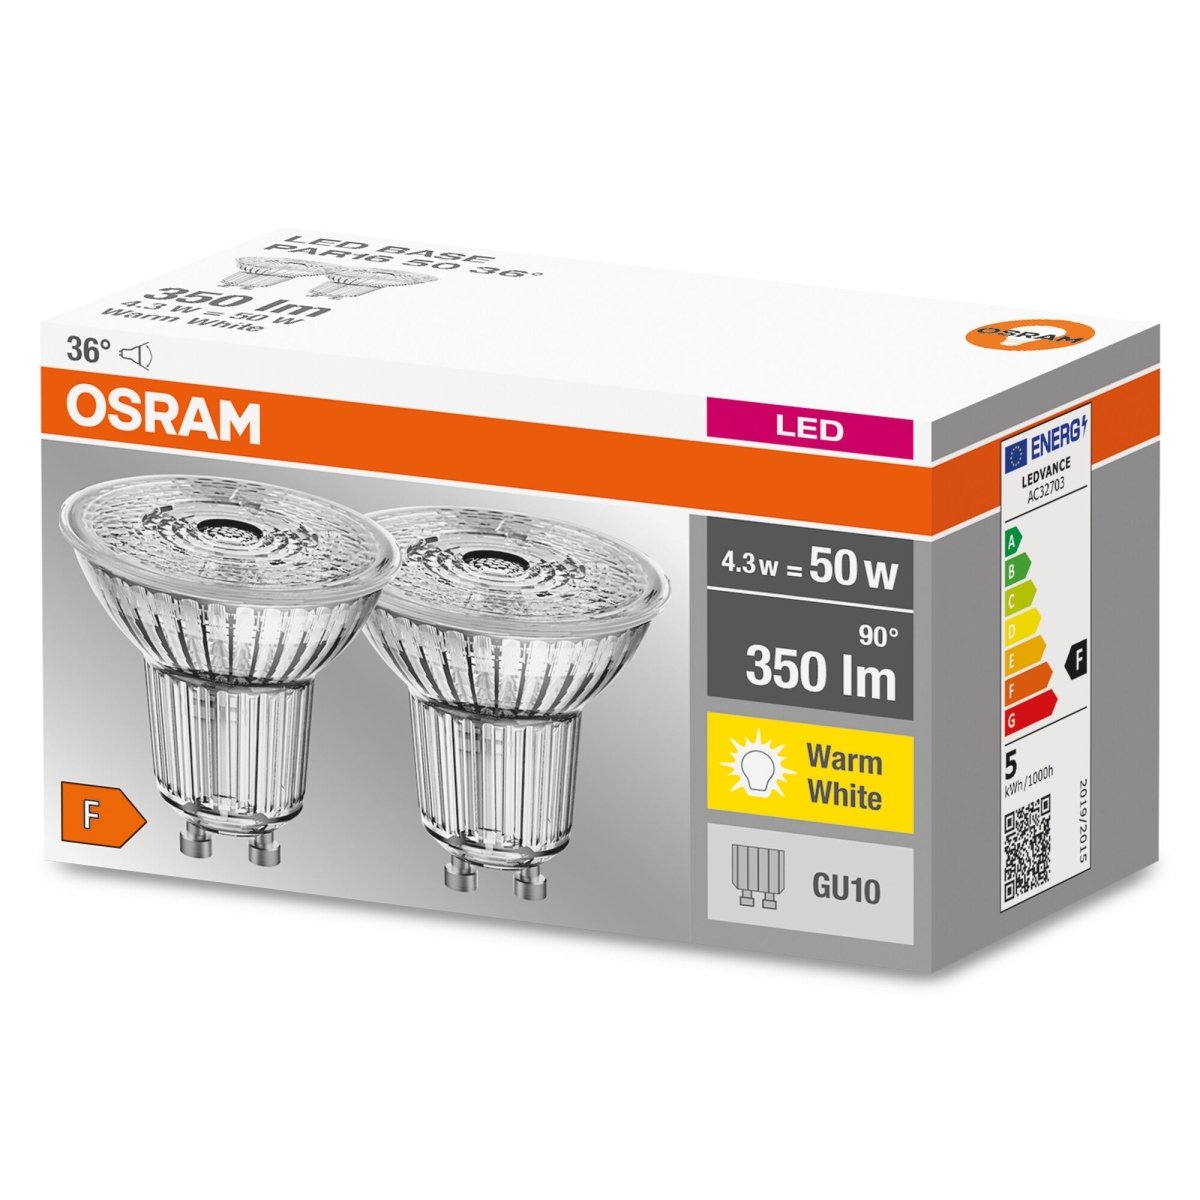 2 szt. wytrzymała lampa LED typu downlight GU10 4,3 W BASE ciepłobiała - eshop LEDVANCE 4052899972087